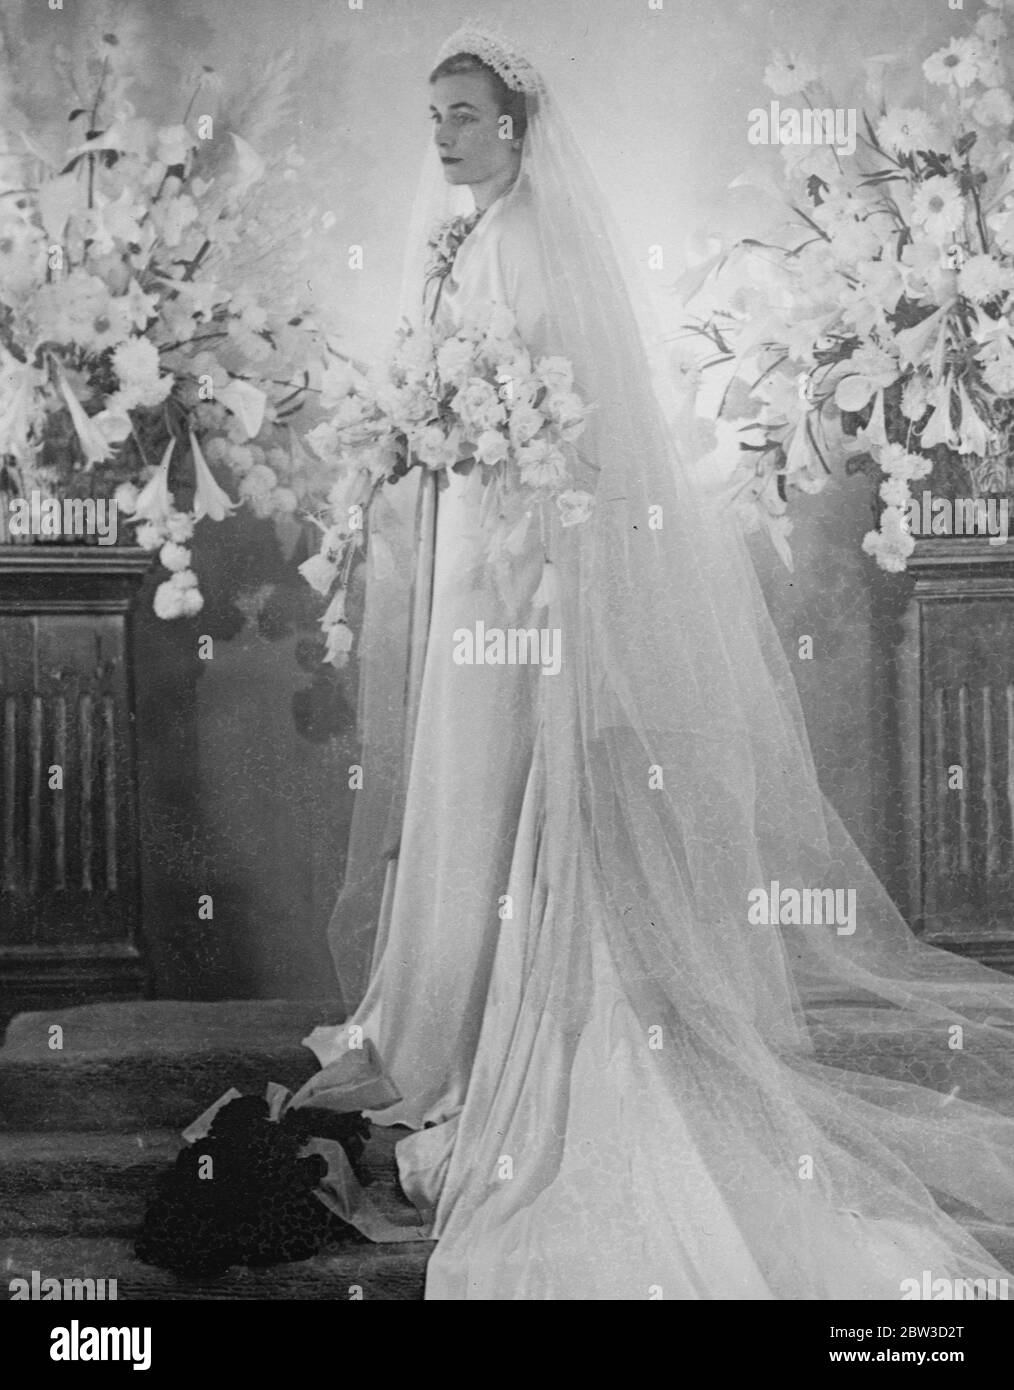 Königliche Braut in ihrem Hochzeitskleid. Lady Alice Montagu Douglas Scott, Tochter des verstorbenen Duke of Buccleuch, der mit dem Herzog von Gloucester in der privaten Kapelle am Buckingham Palace heute verheiratet werden soll (Mittwoch). Foto zeigt Lady Alice Montagu in ihrem Hochzeitskleid. November 1935 Stockfoto